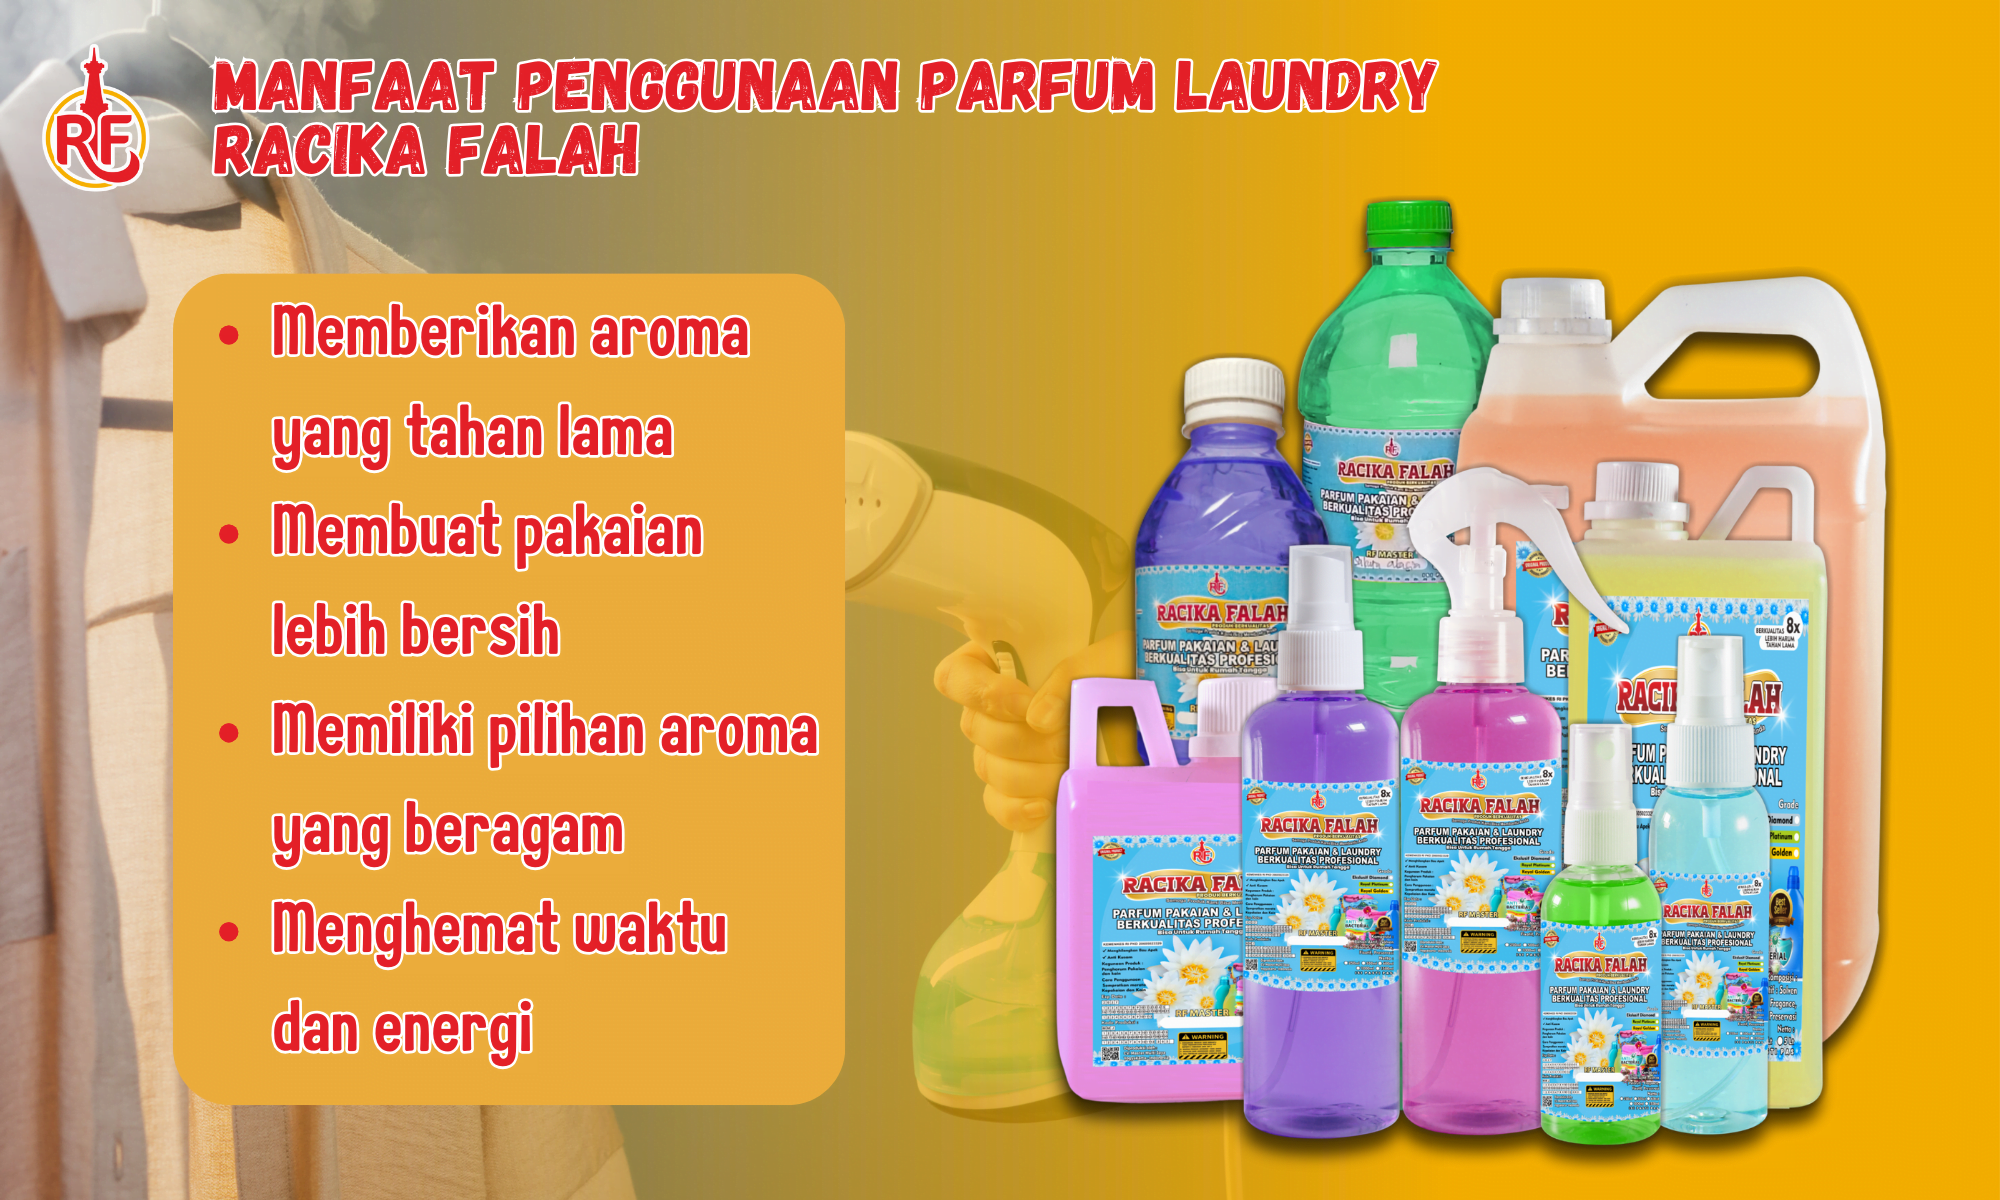 Manfaat Penggunaan Parfum Laundry